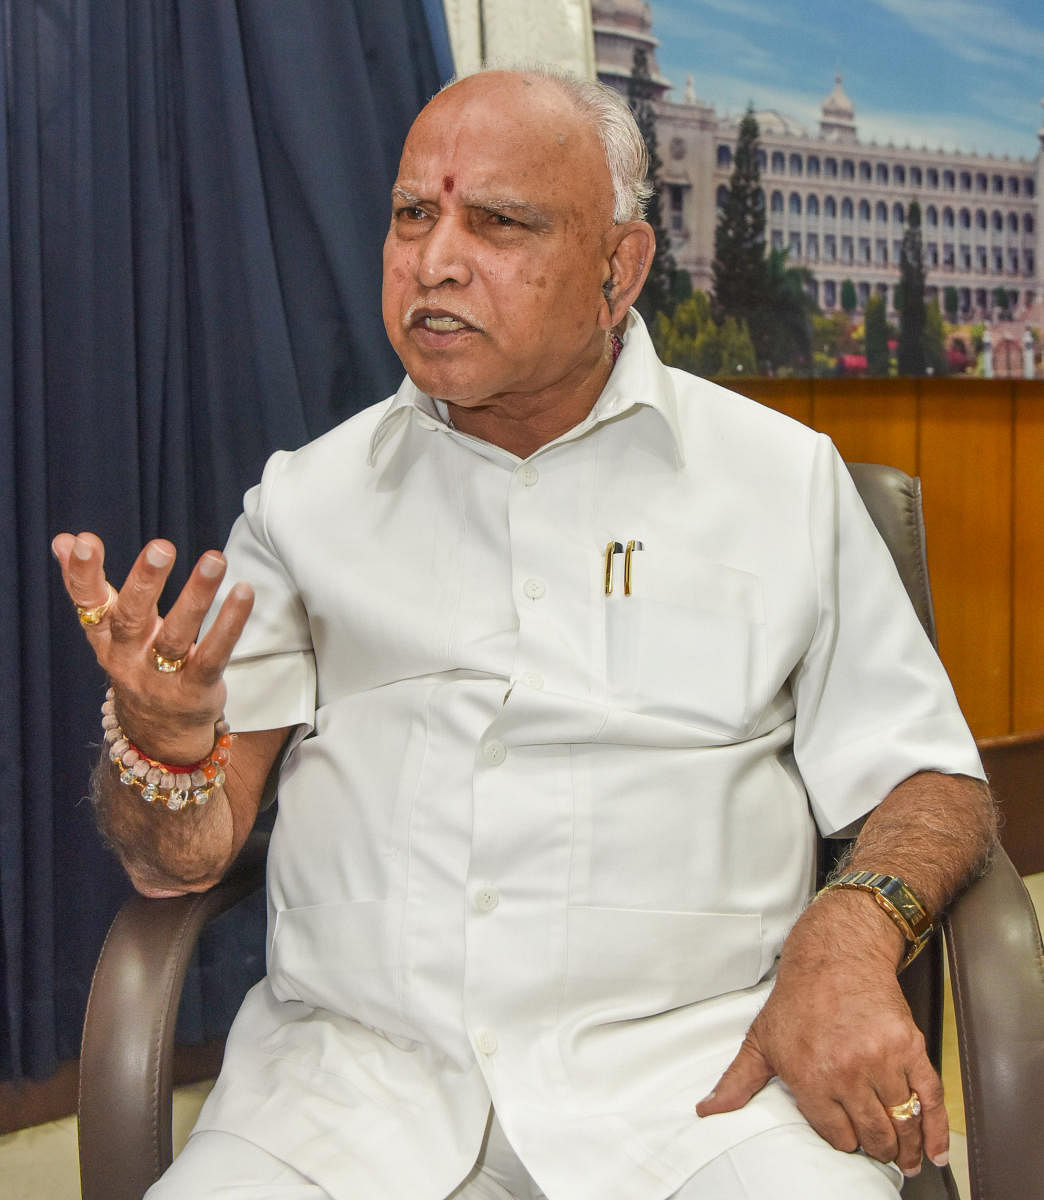 Karnataka Chief Minister B S Yediyurappa